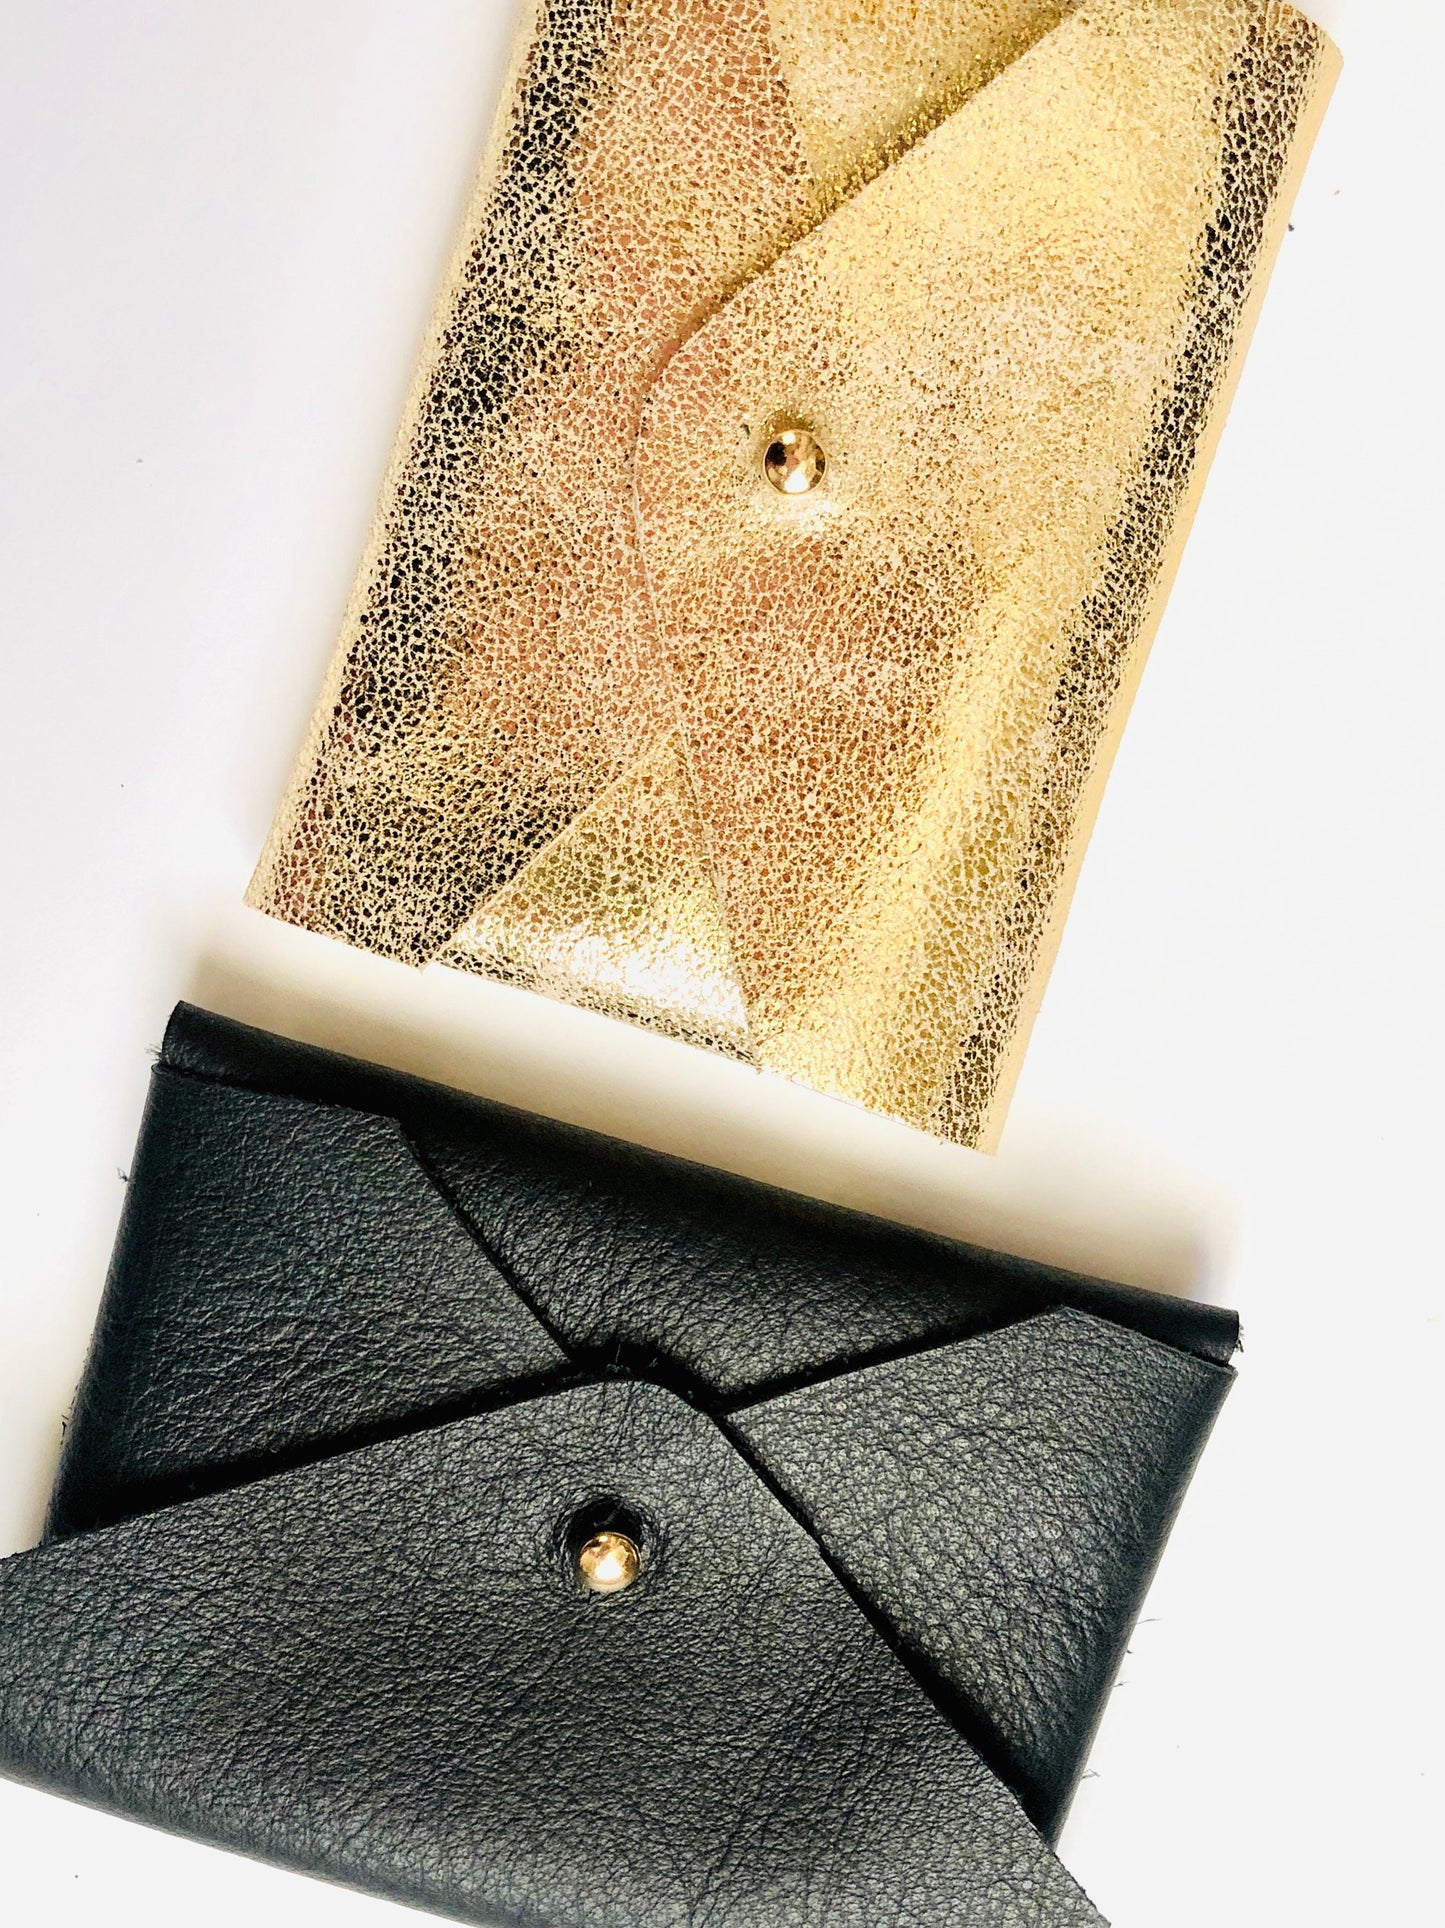 Porte monnaie cuir doré - porte monnaie personnalisé - porte carte cuir - porte pièce cuir - bourse cuir noir